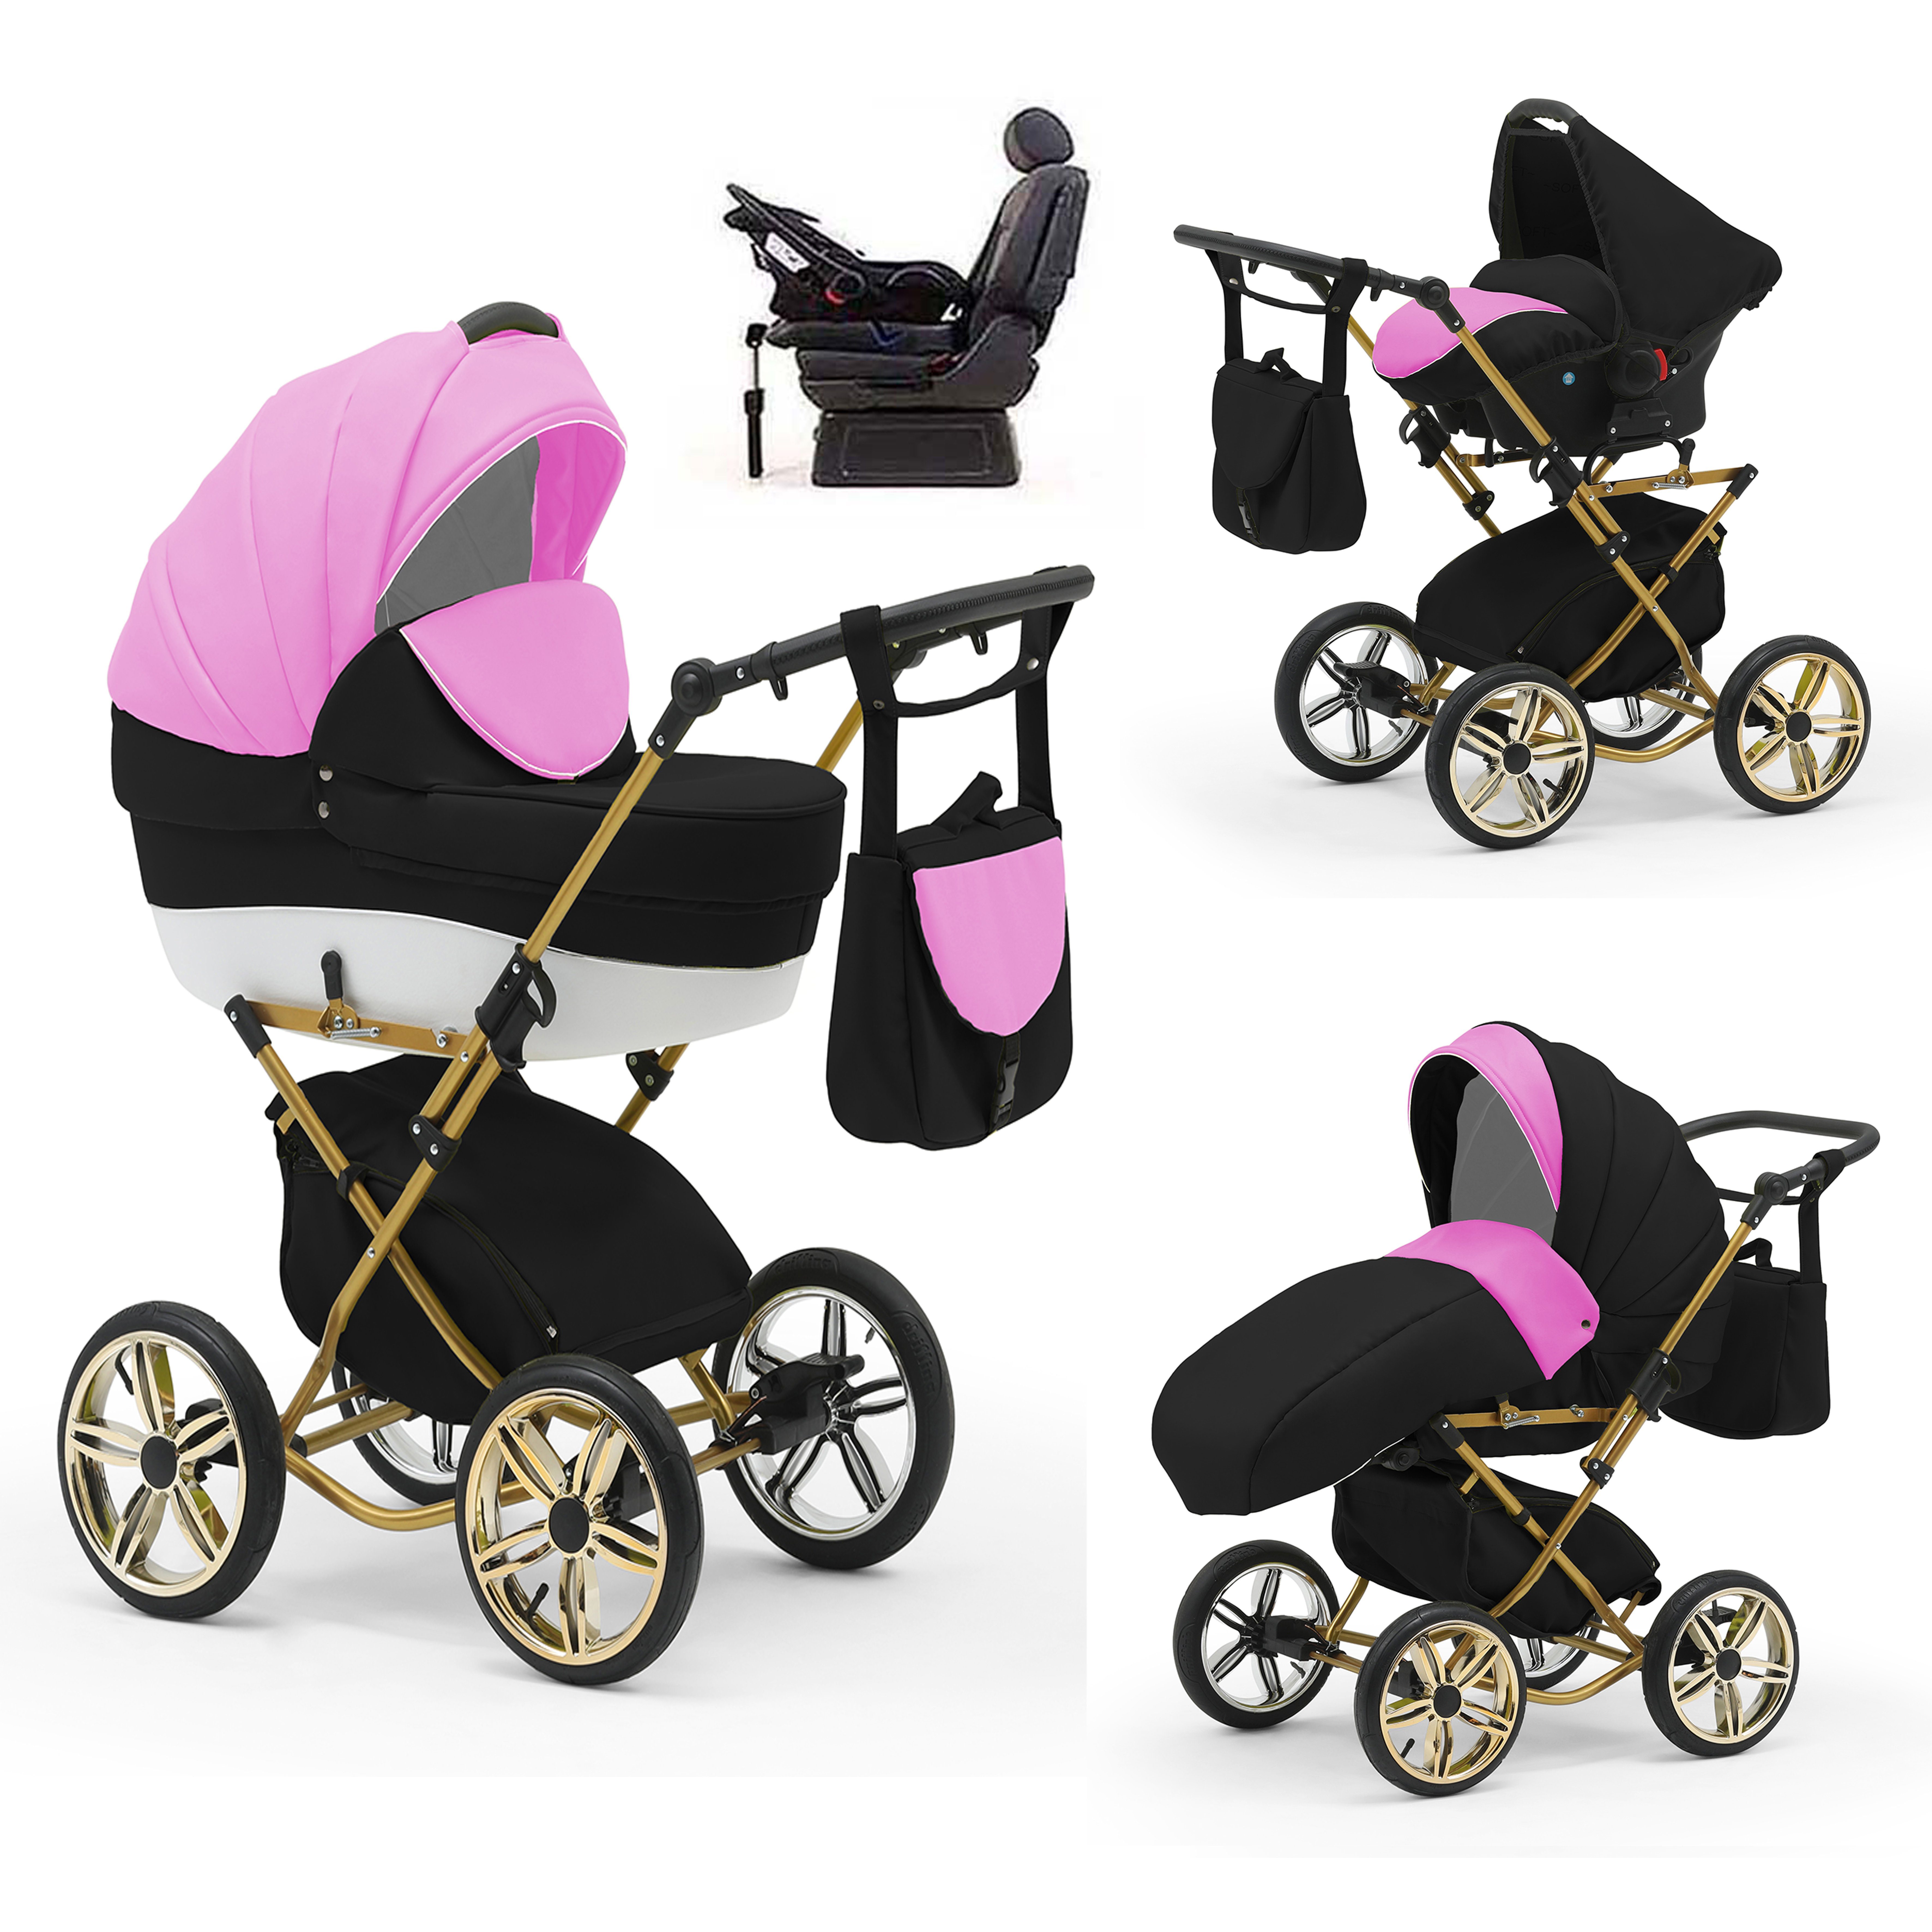 babies-on-wheels Kombi-Kinderwagen Sorento 4 in 1 inkl. Autositz und Iso Base - 14 Teile - in 10 Designs Pink-Weiß-Schwarz